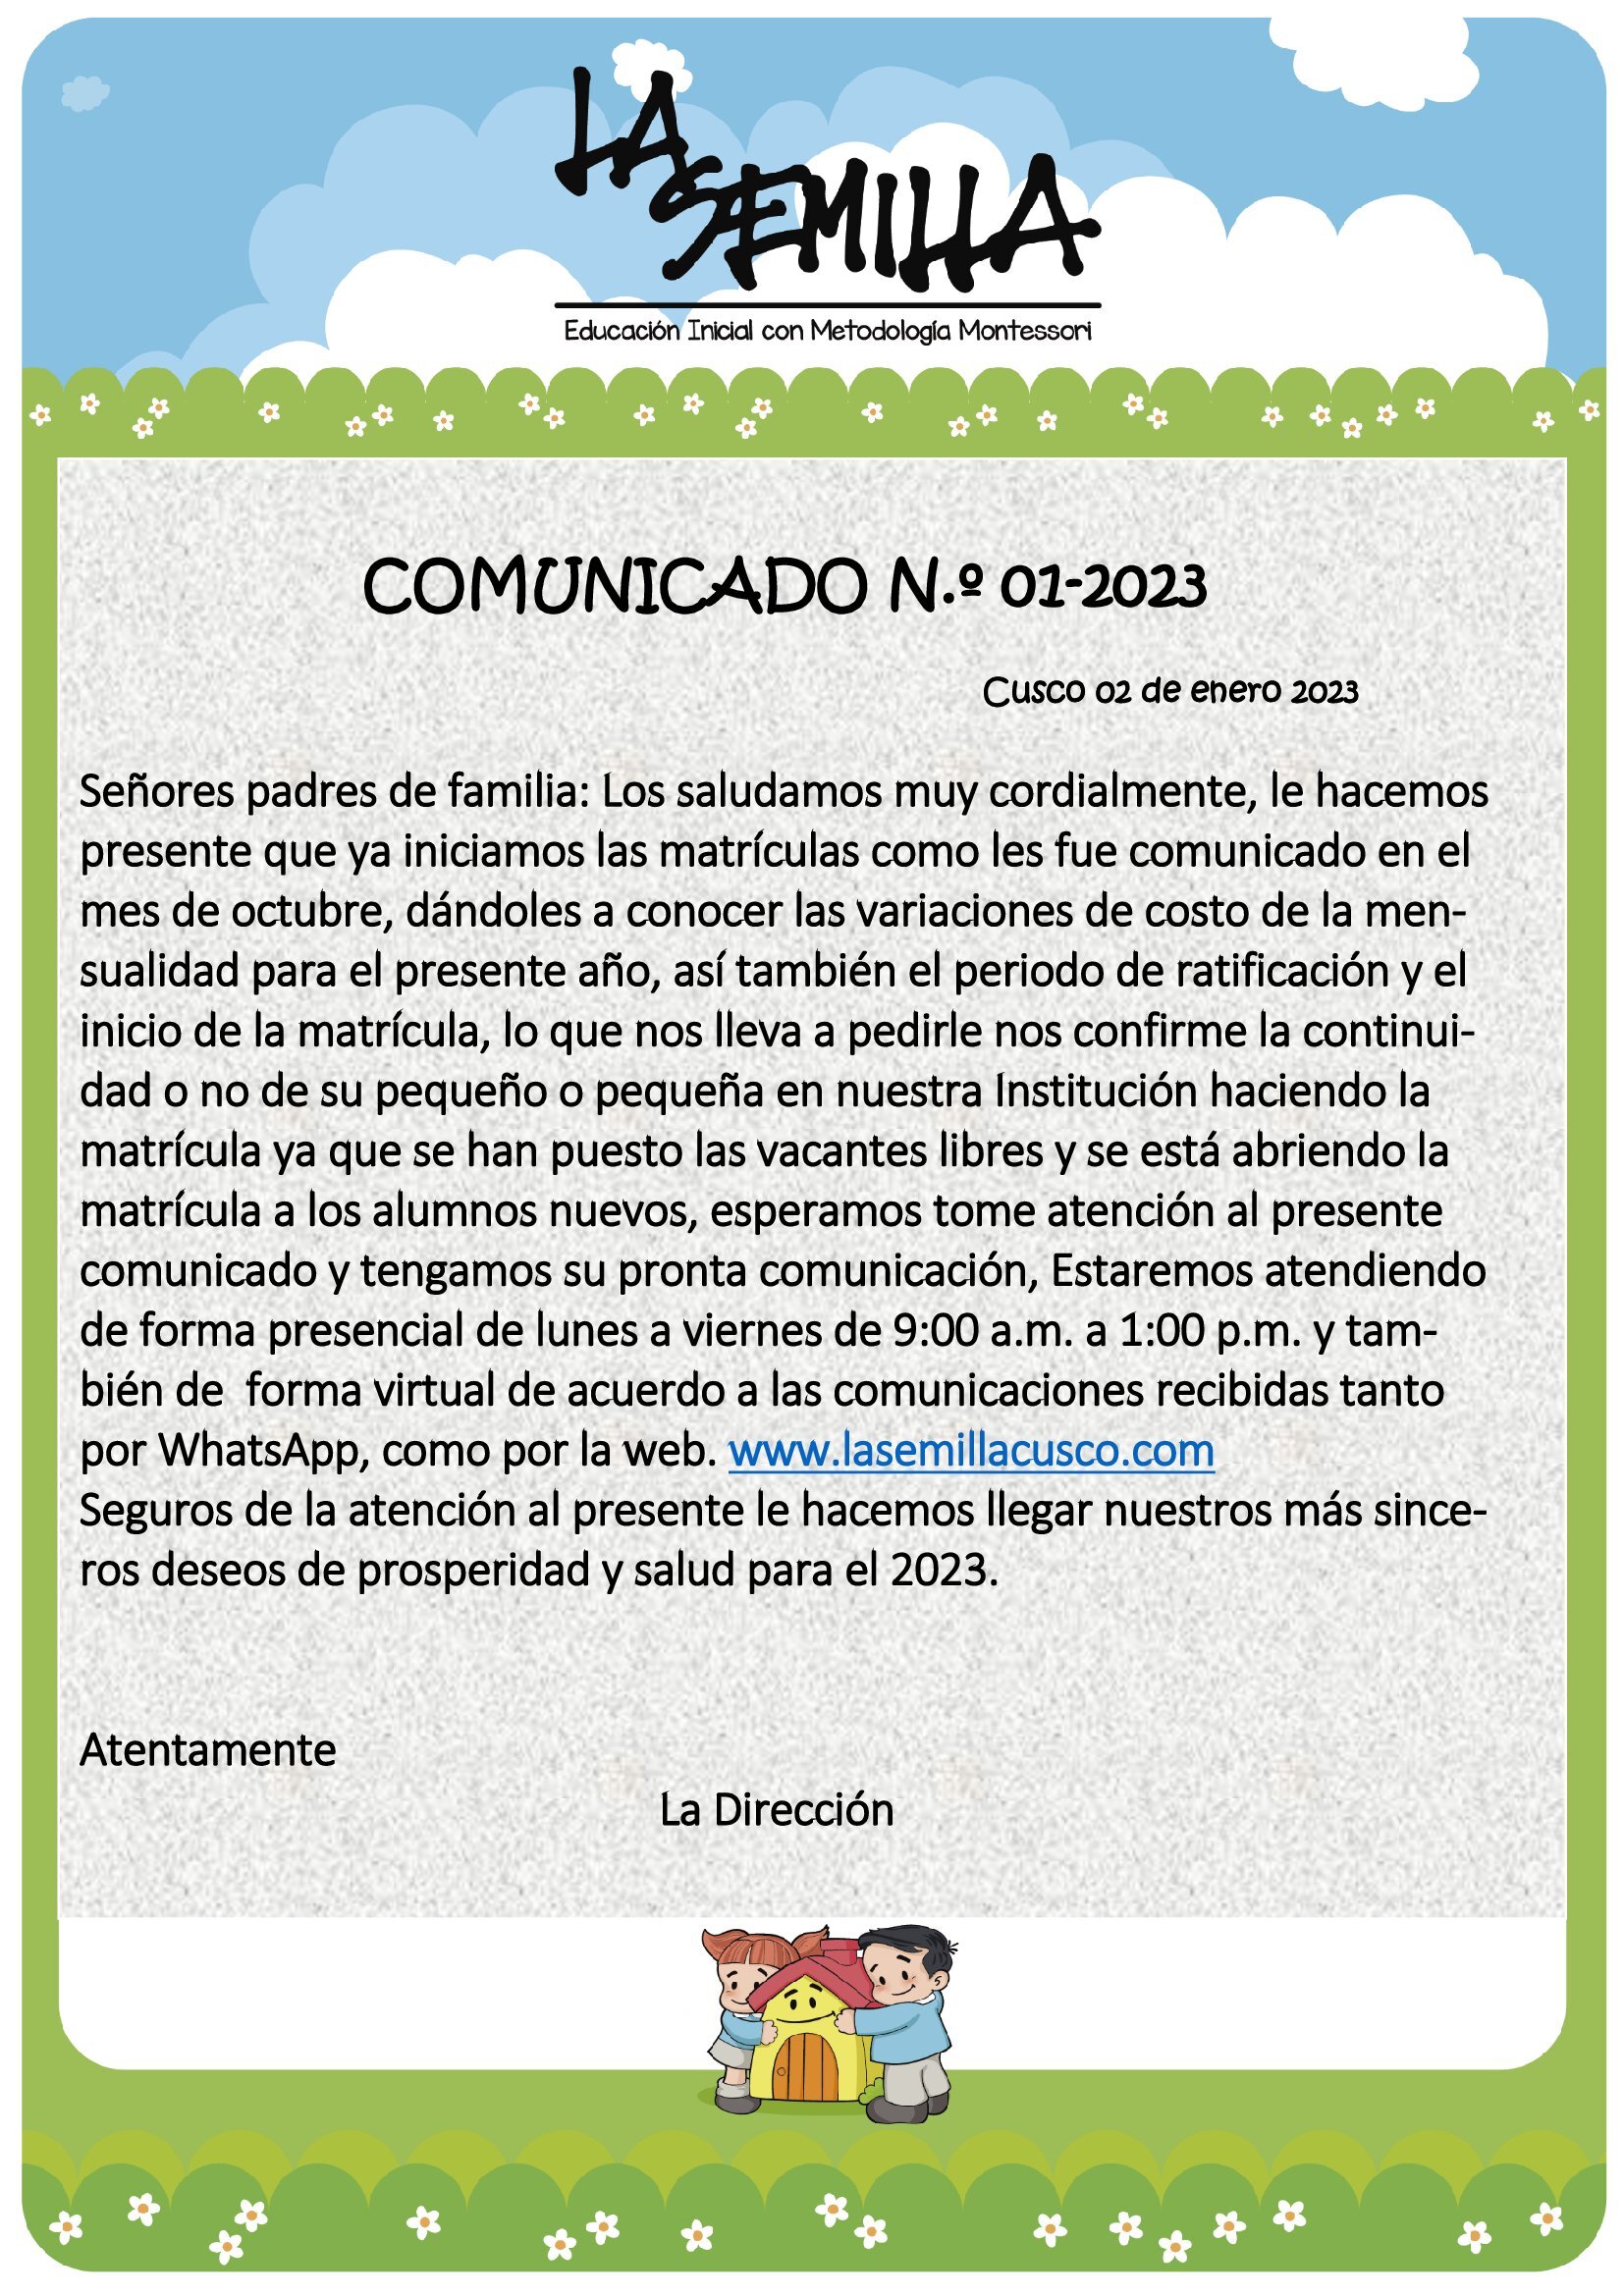 COMUNICADO DE RESERVA DE MATRÍCULA 2023